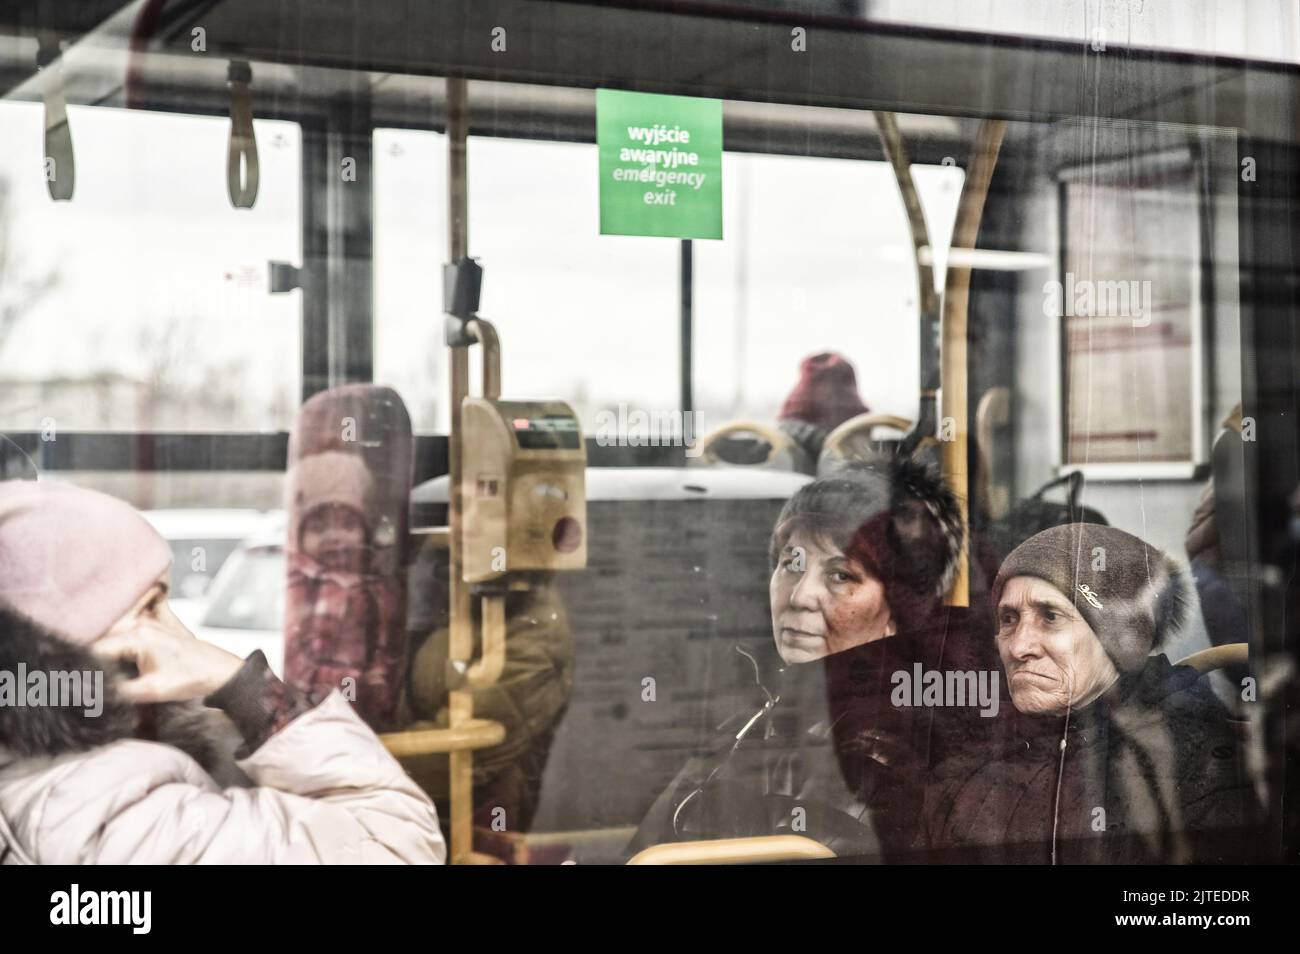 Ukrainische Flüchtlinge in einem Zug am Bahnhof gesehen. Der Bahnhof wird zum Zwischenstopp für die Weiterreise von Flüchtlingen aus der vom Krieg zerrissenen Ukraine. Der Konflikt mit Russland hat zu einem Massenexodus hauptsächlich von Frauen und Kindern geführt. Gezwungen, ihre Häuser und ihr tägliches Leben zu verlassen, versuchen sie, an einem sicheren Ort Zuflucht zu finden. Stockfoto